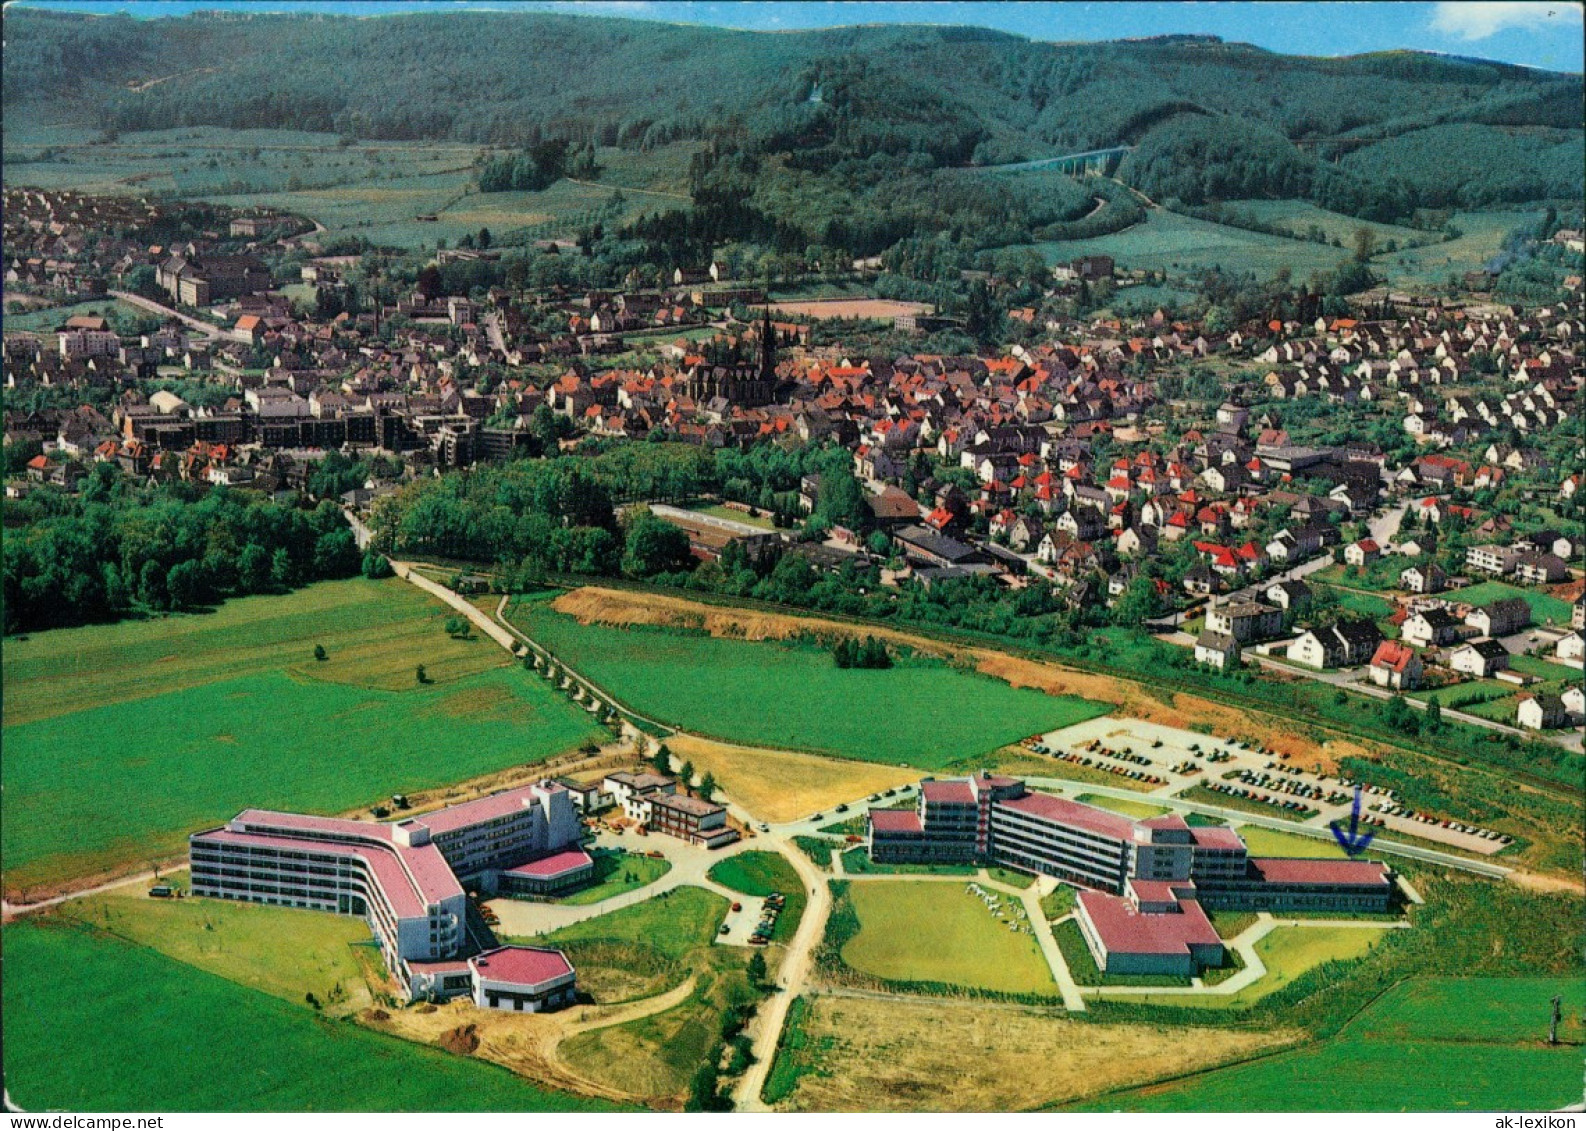 Bad Driburg Luftbild Mit Caspar-Heinrich-Klinik Kurklinik  1980 - Bad Driburg